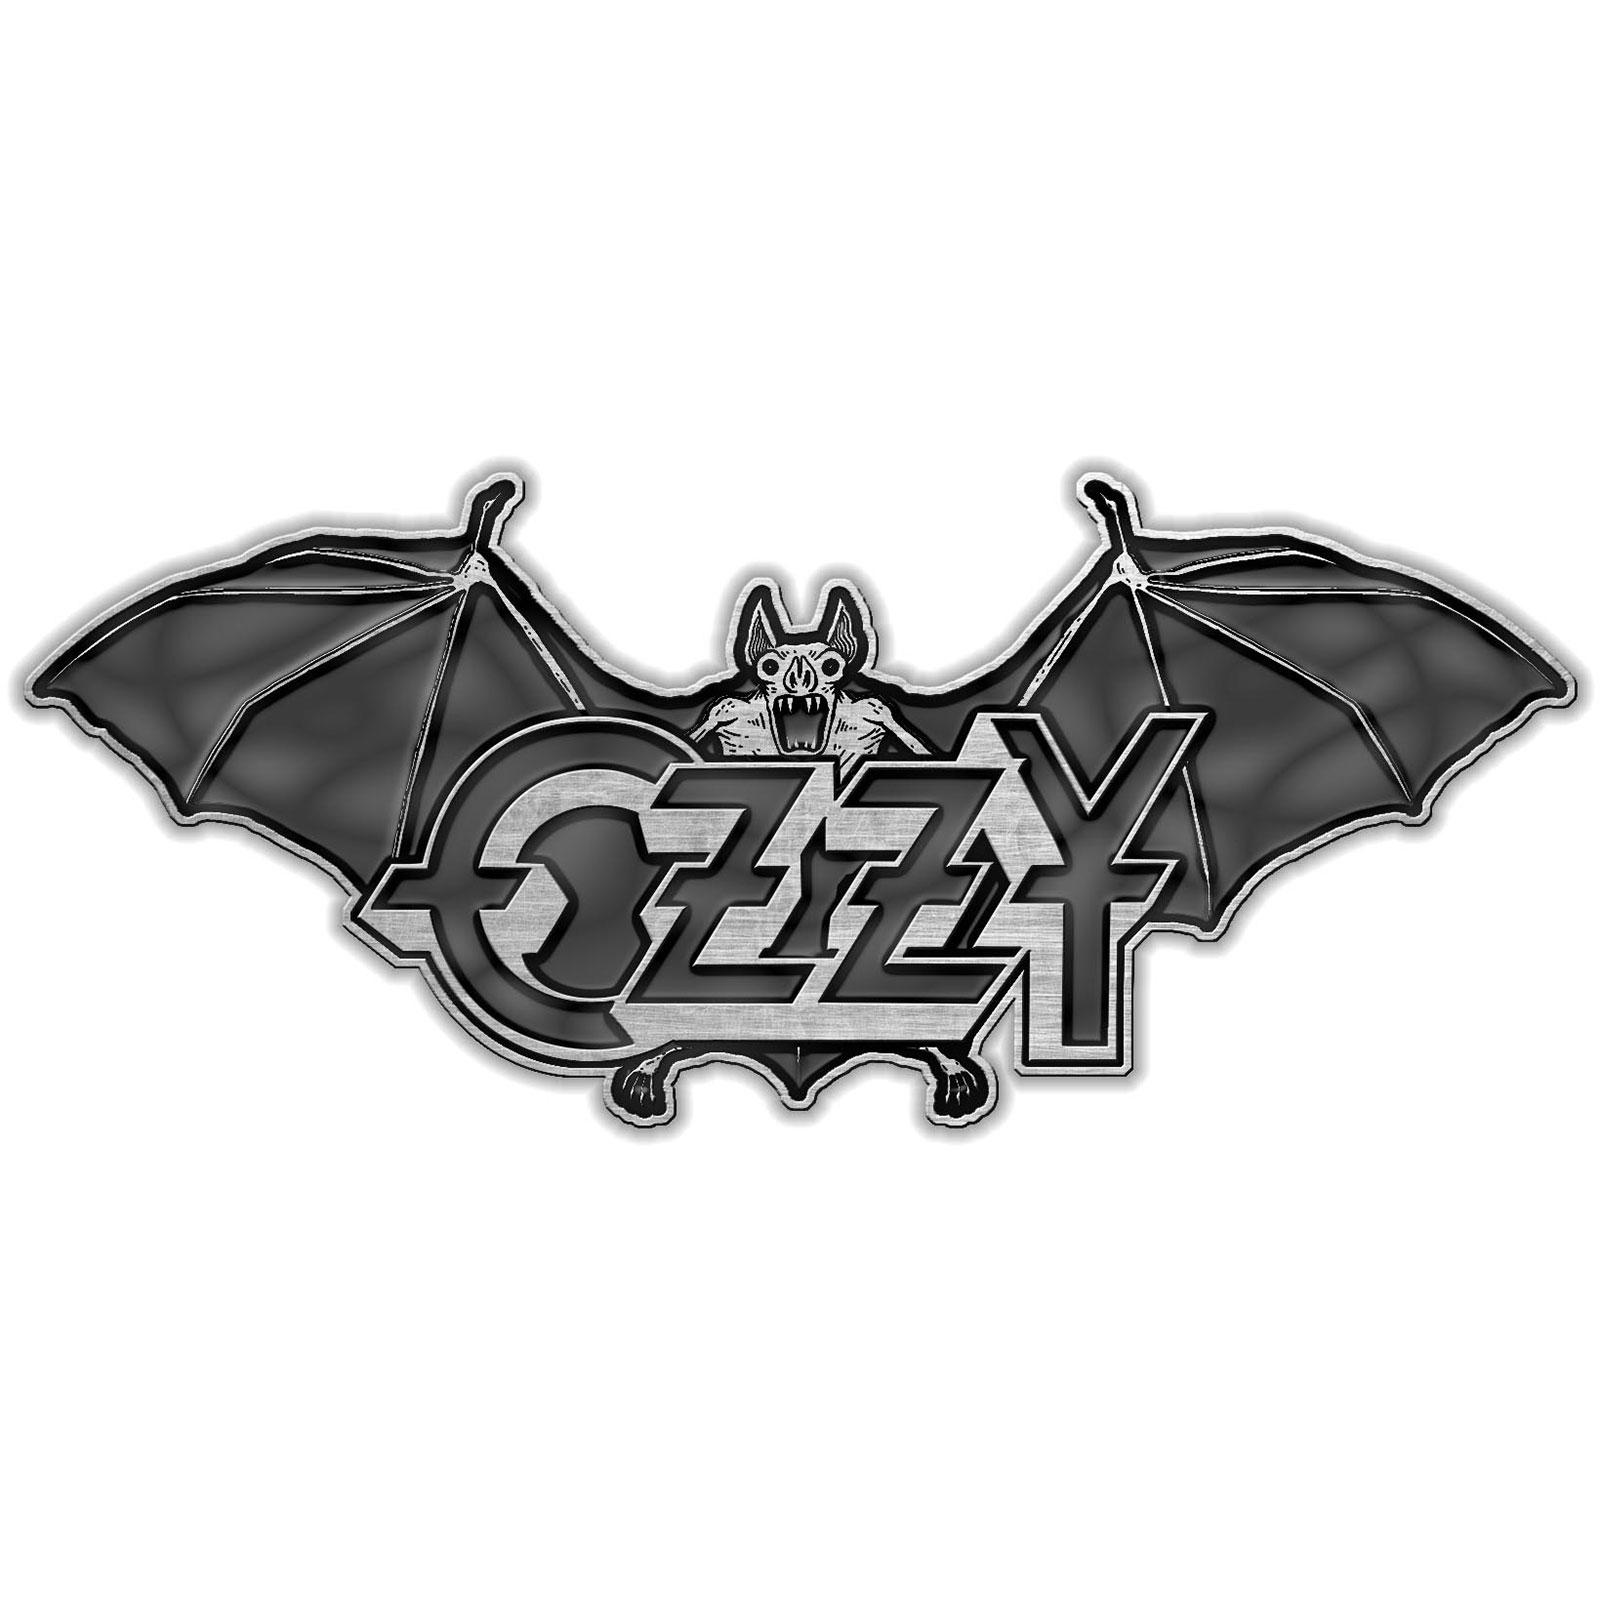 (オジー・オズボーン) Ozzy Osbourne オフィシャル商品 Ordinary Man エナメル インフィル バッジ 【海..